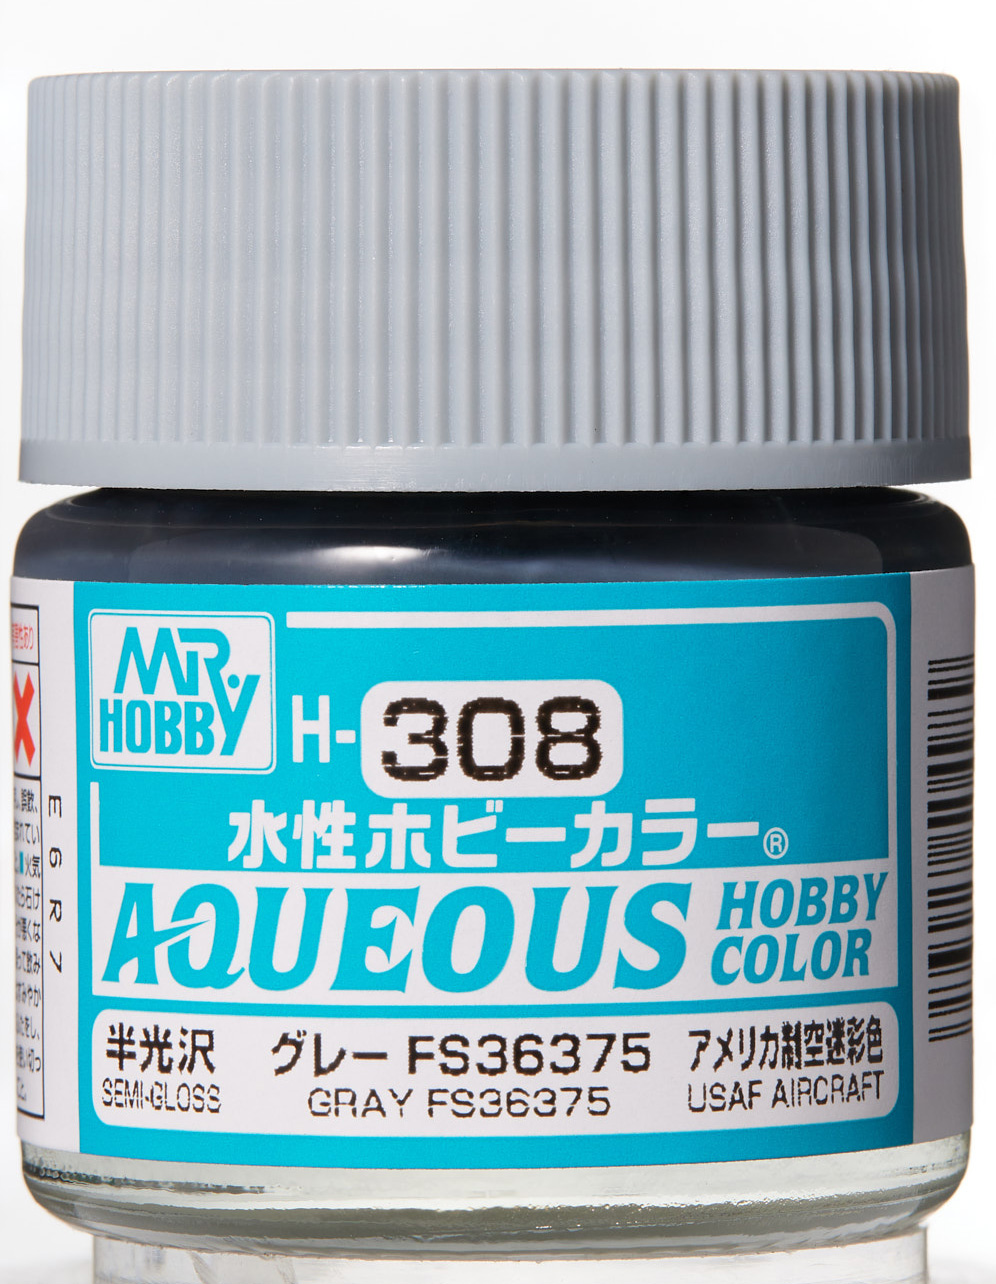 Mr. Aqueous Hobby Color - Gray FS36375 - H308 - Grau FS36375